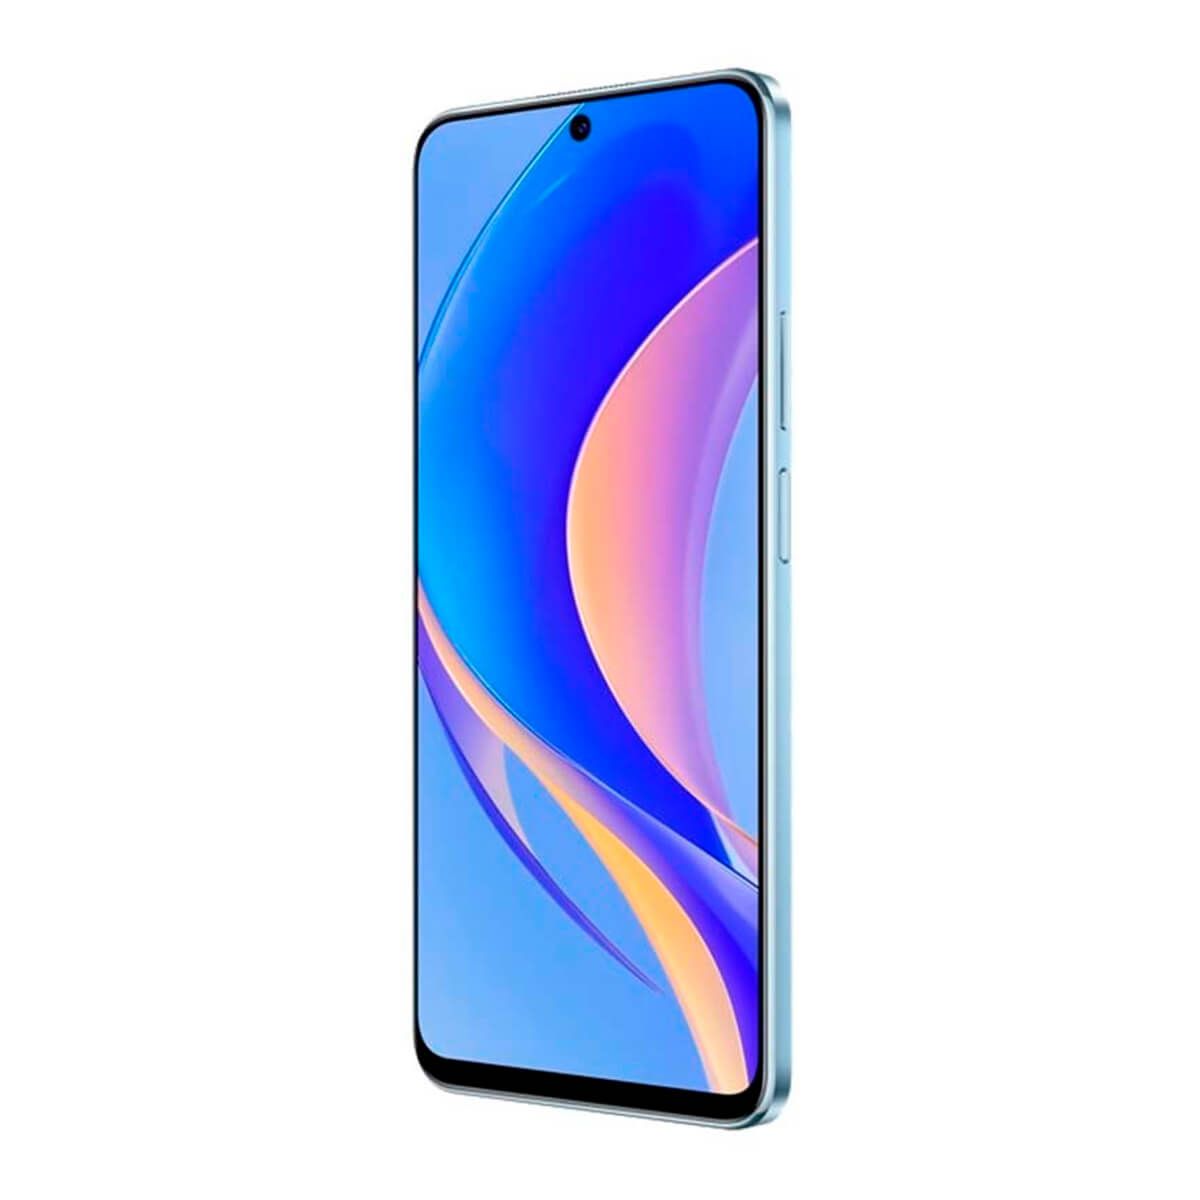 Huawei Nova Y90 6GB/128GB Azul (Crystal Blue) Dual SIM